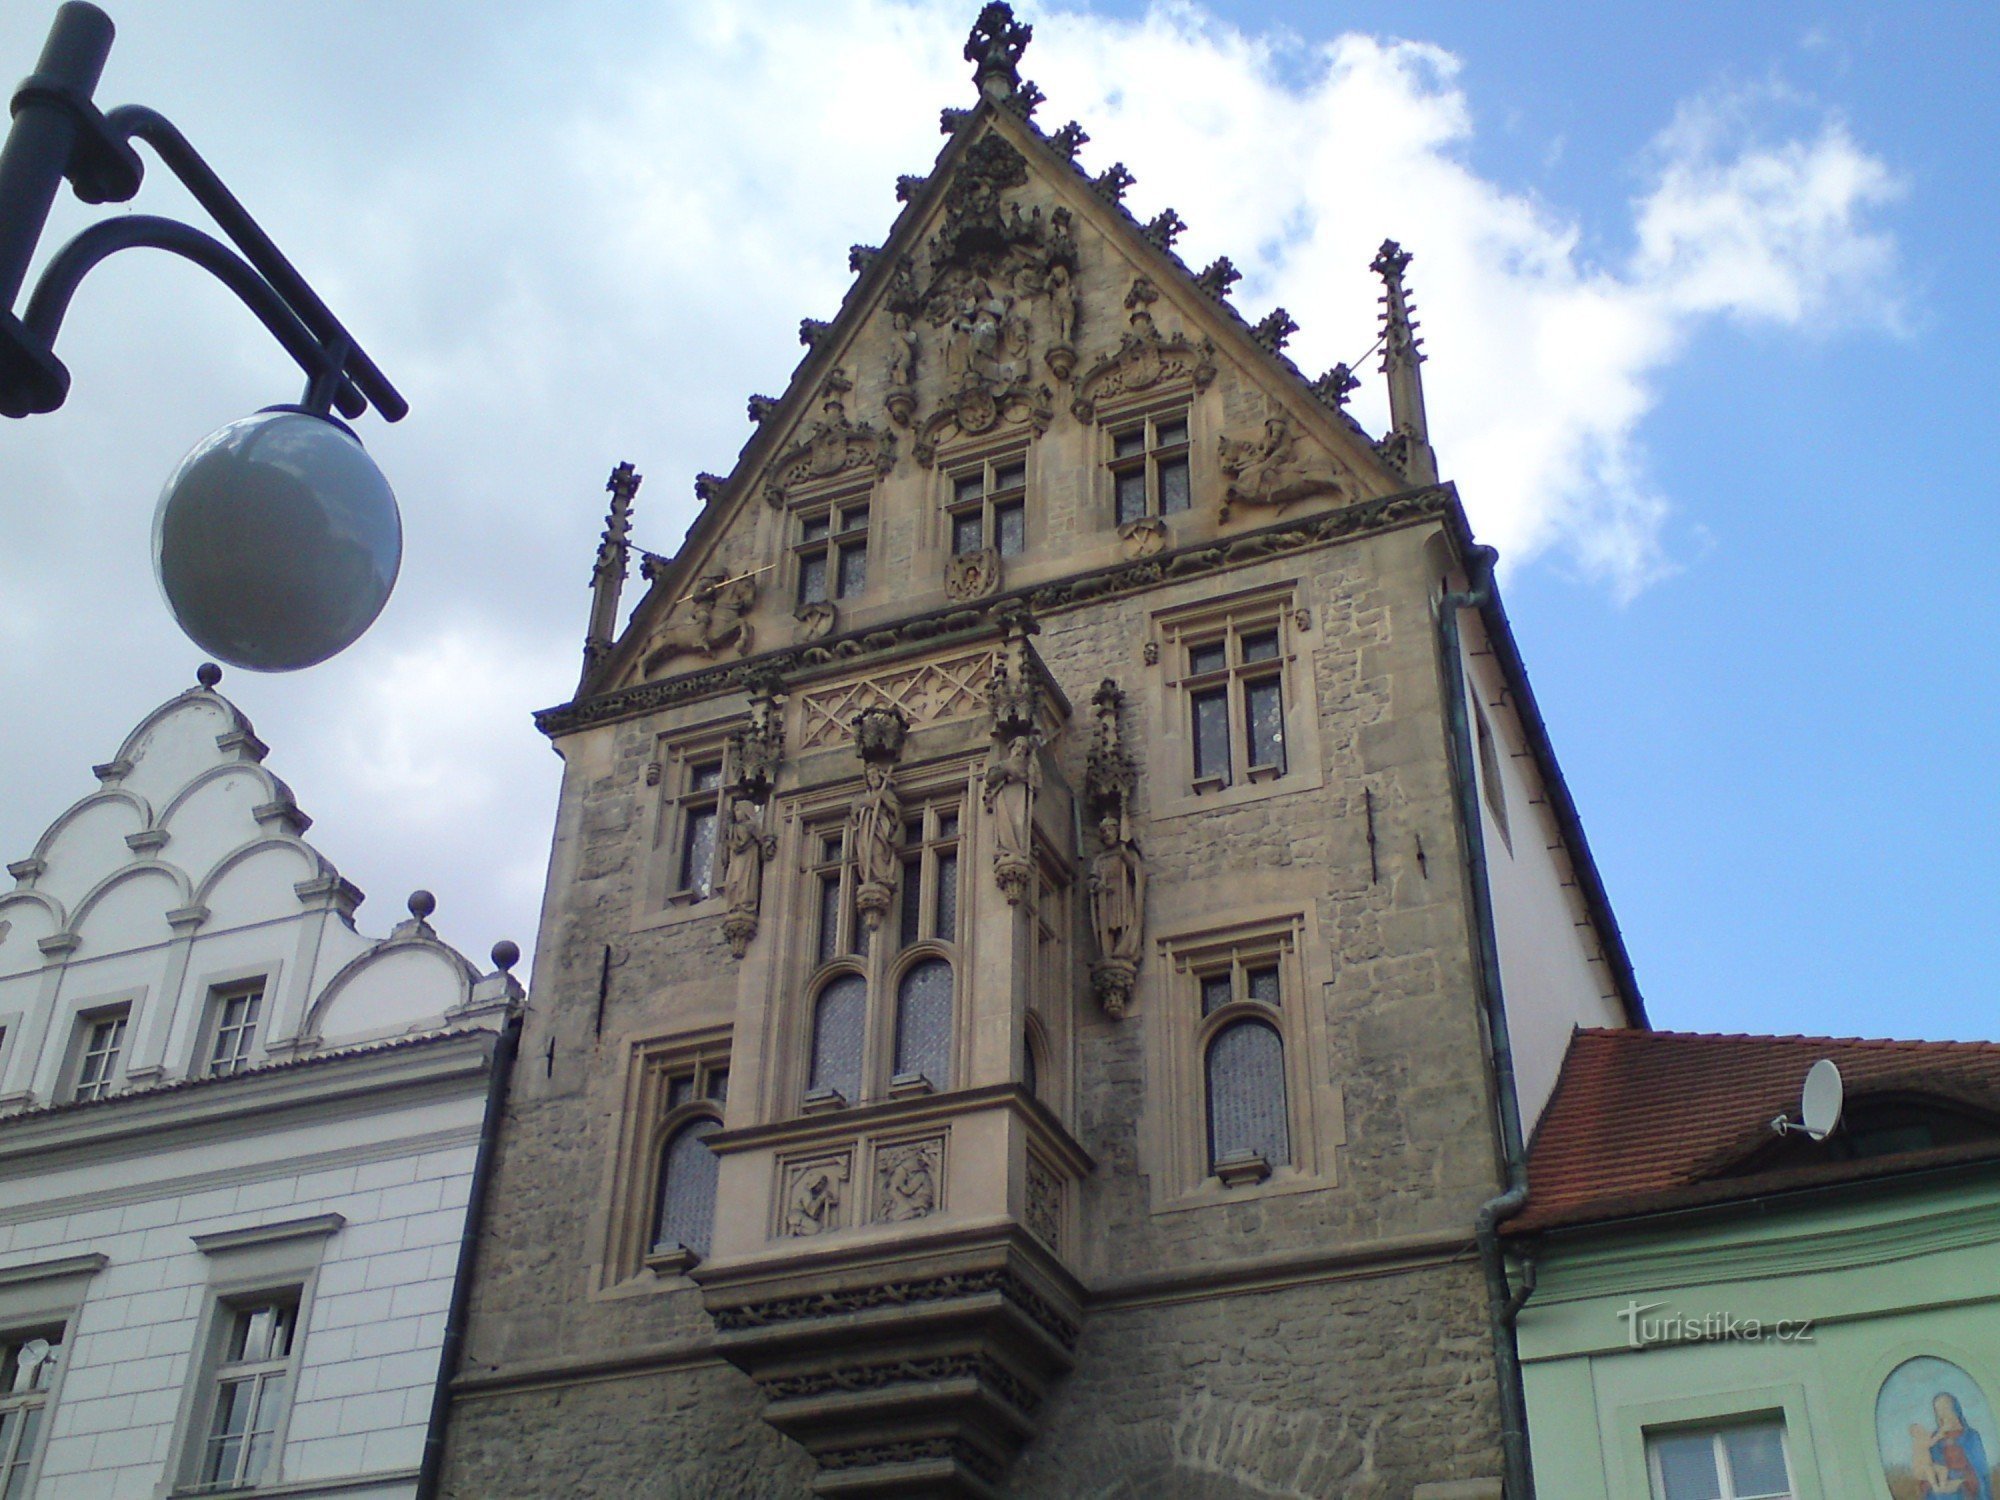 Jeden z nejkrásnější ch gotických domů v Čechách zvaný Kamenný dům s bohatě zdob